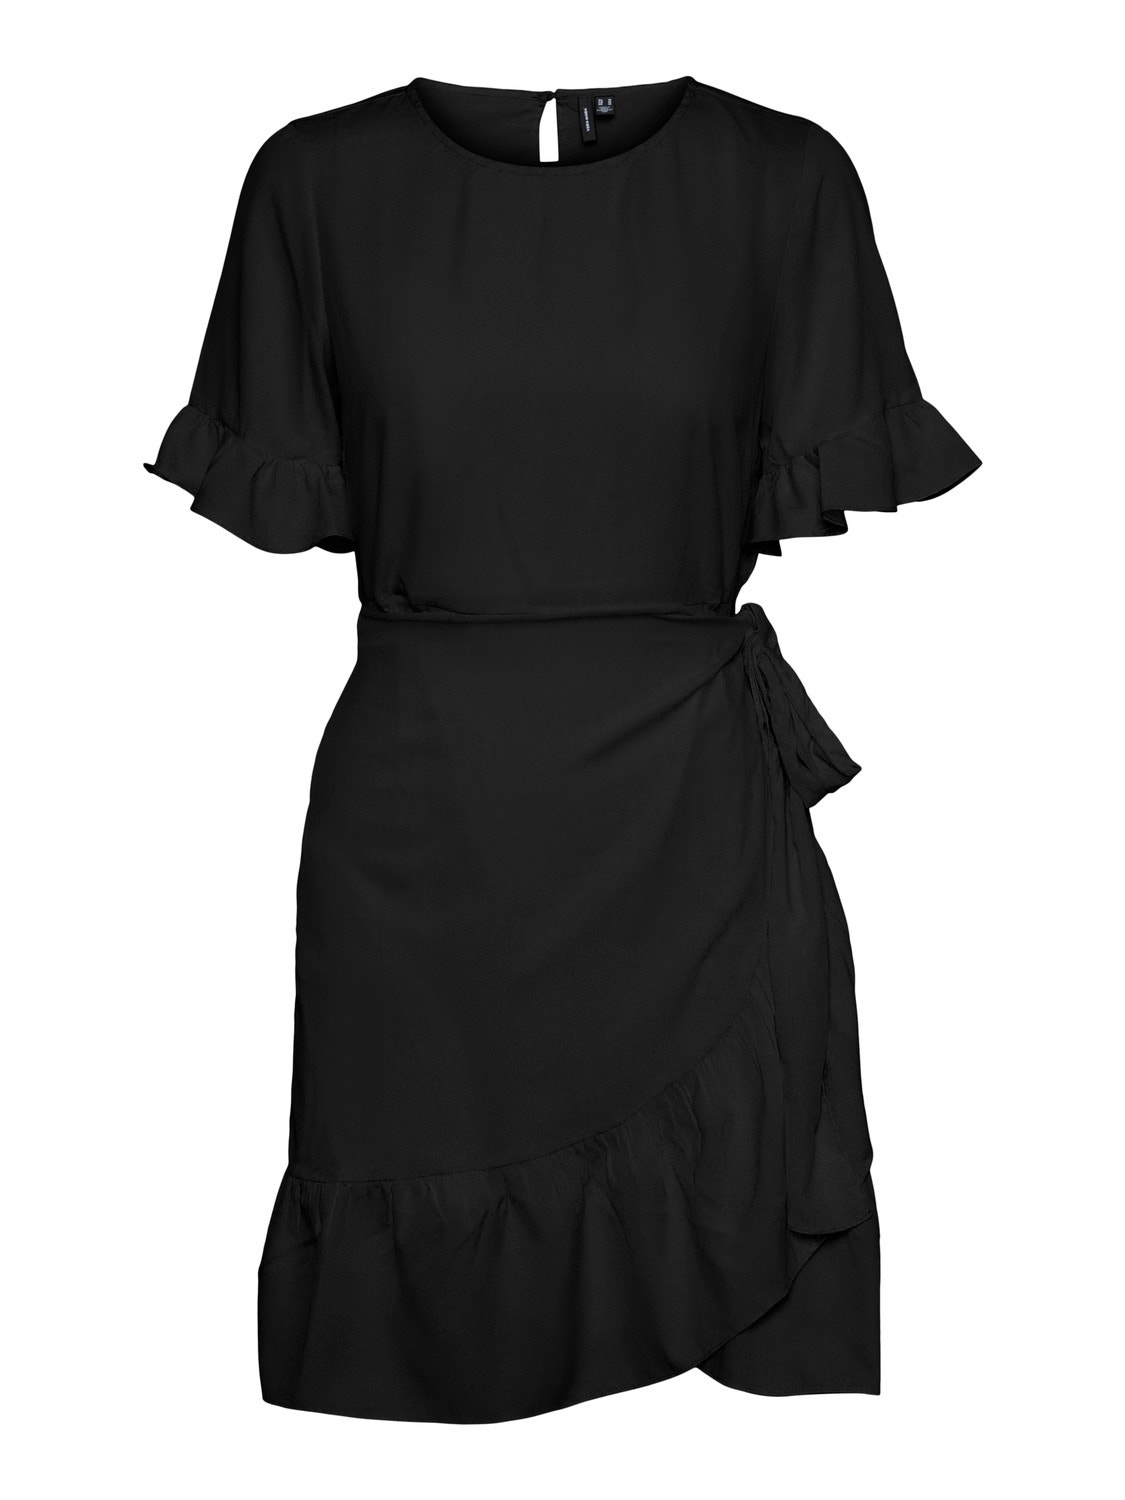 Vero Moda VMHENNA Short dress -Black - 10266073